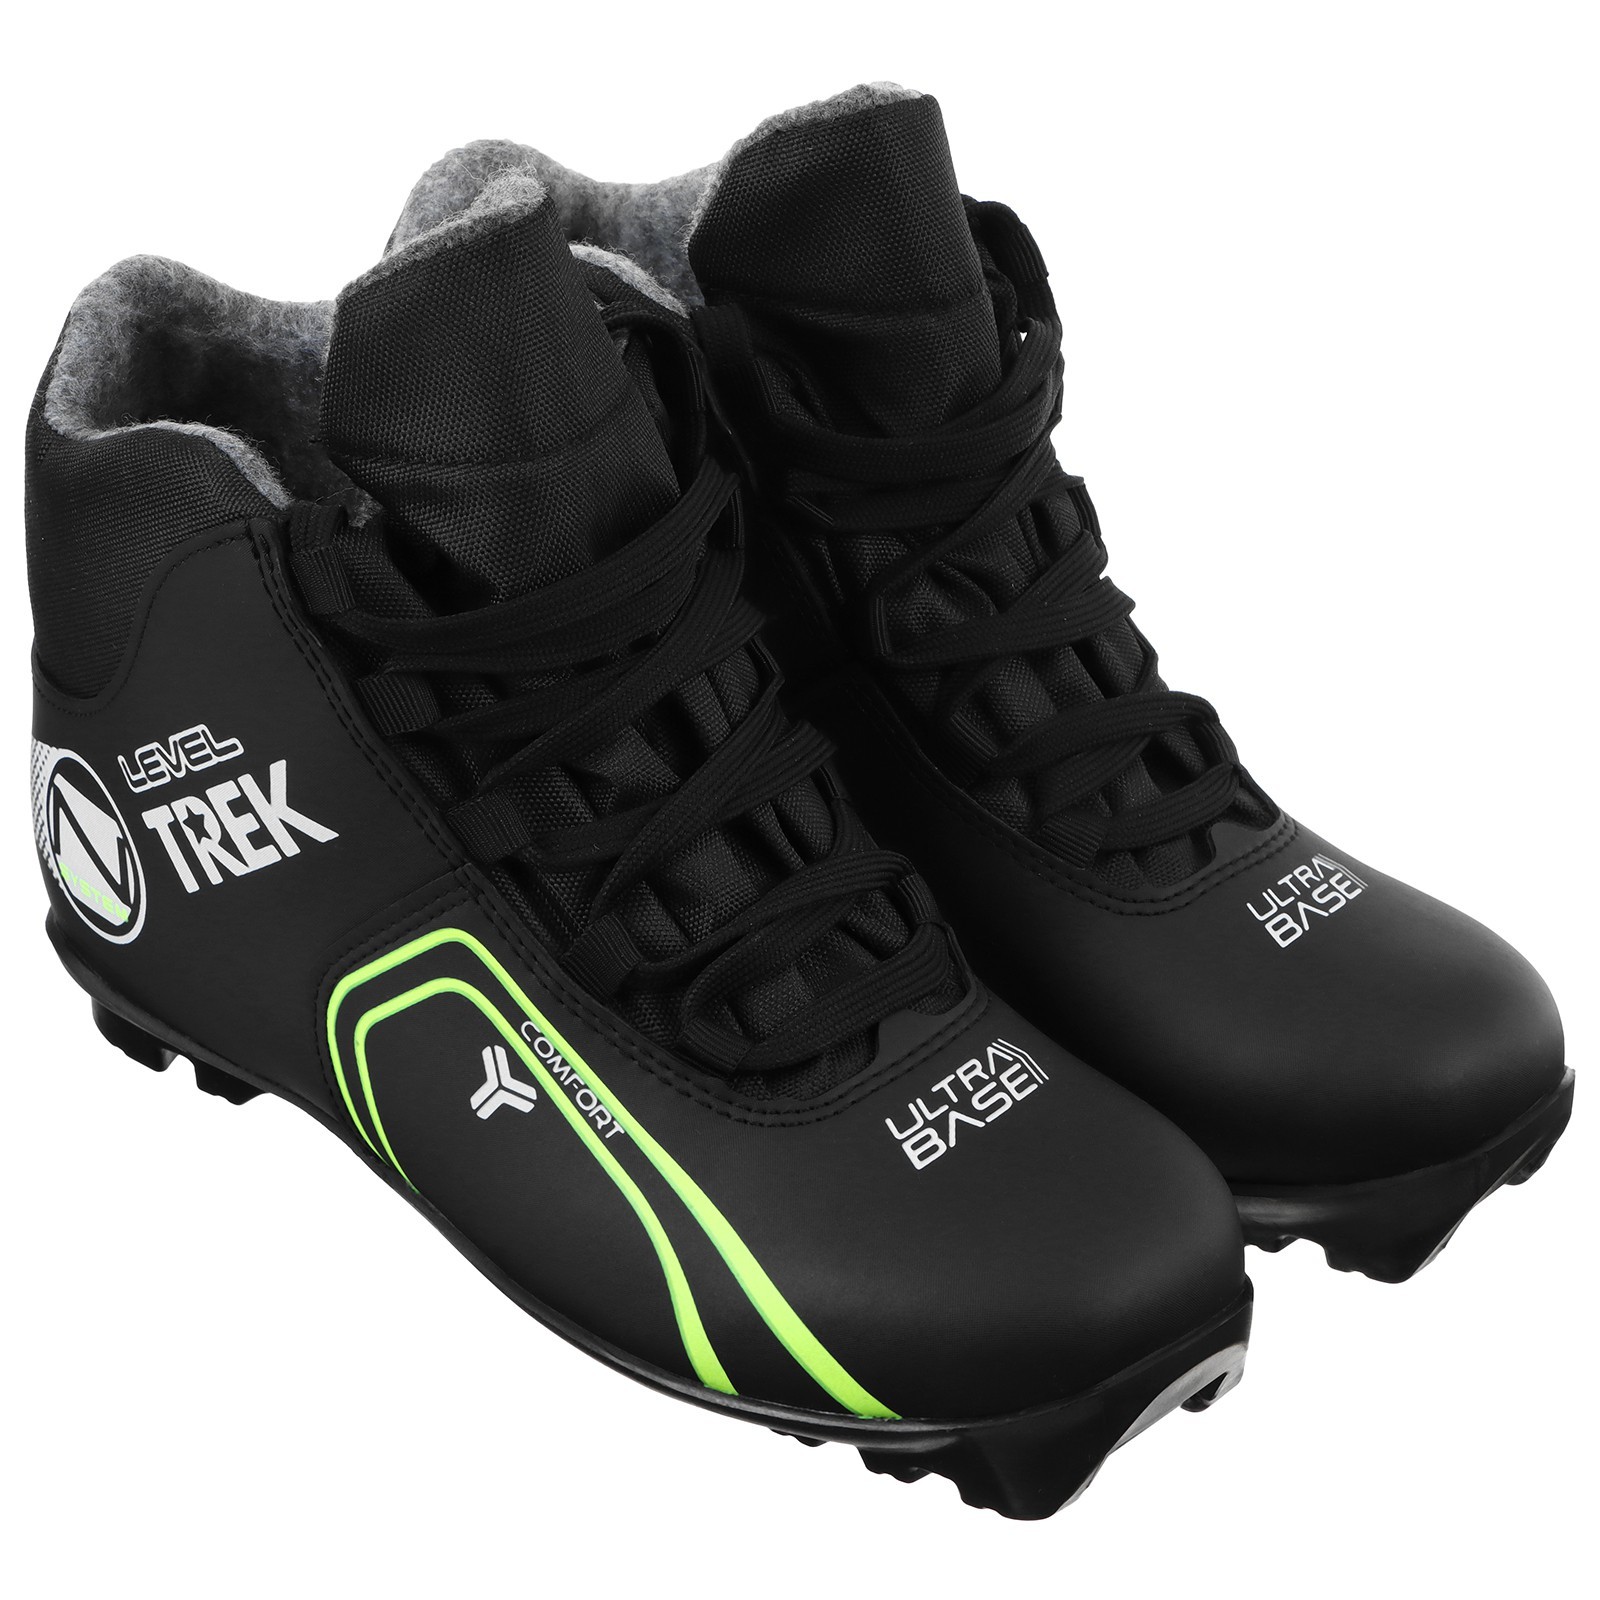 Ботинки лыжные TREK Level 1 NNN черный лого лайм неон 